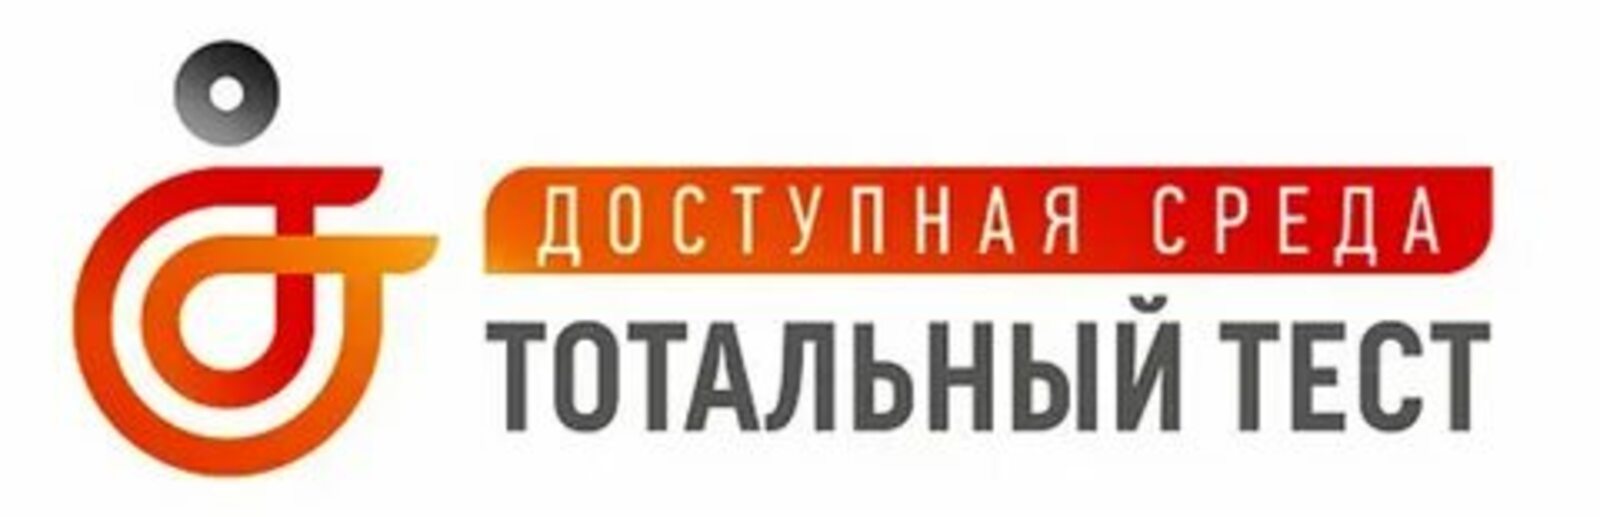 Со 2 декабря стартует общероссийская акция Тотальный тест «Доступная среда»